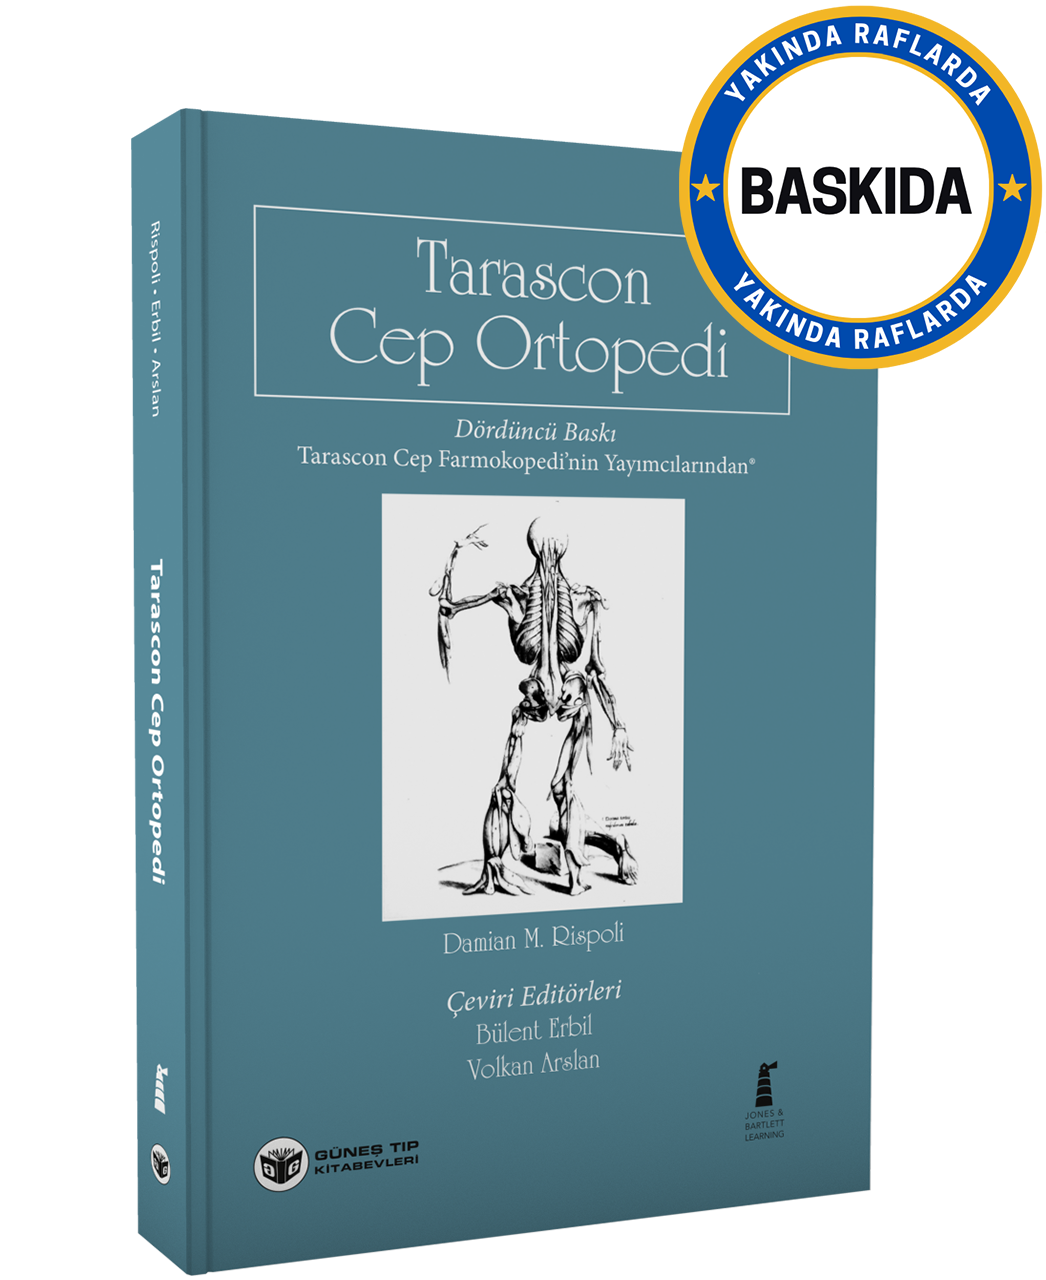 Tarascon Cep Ortopedi